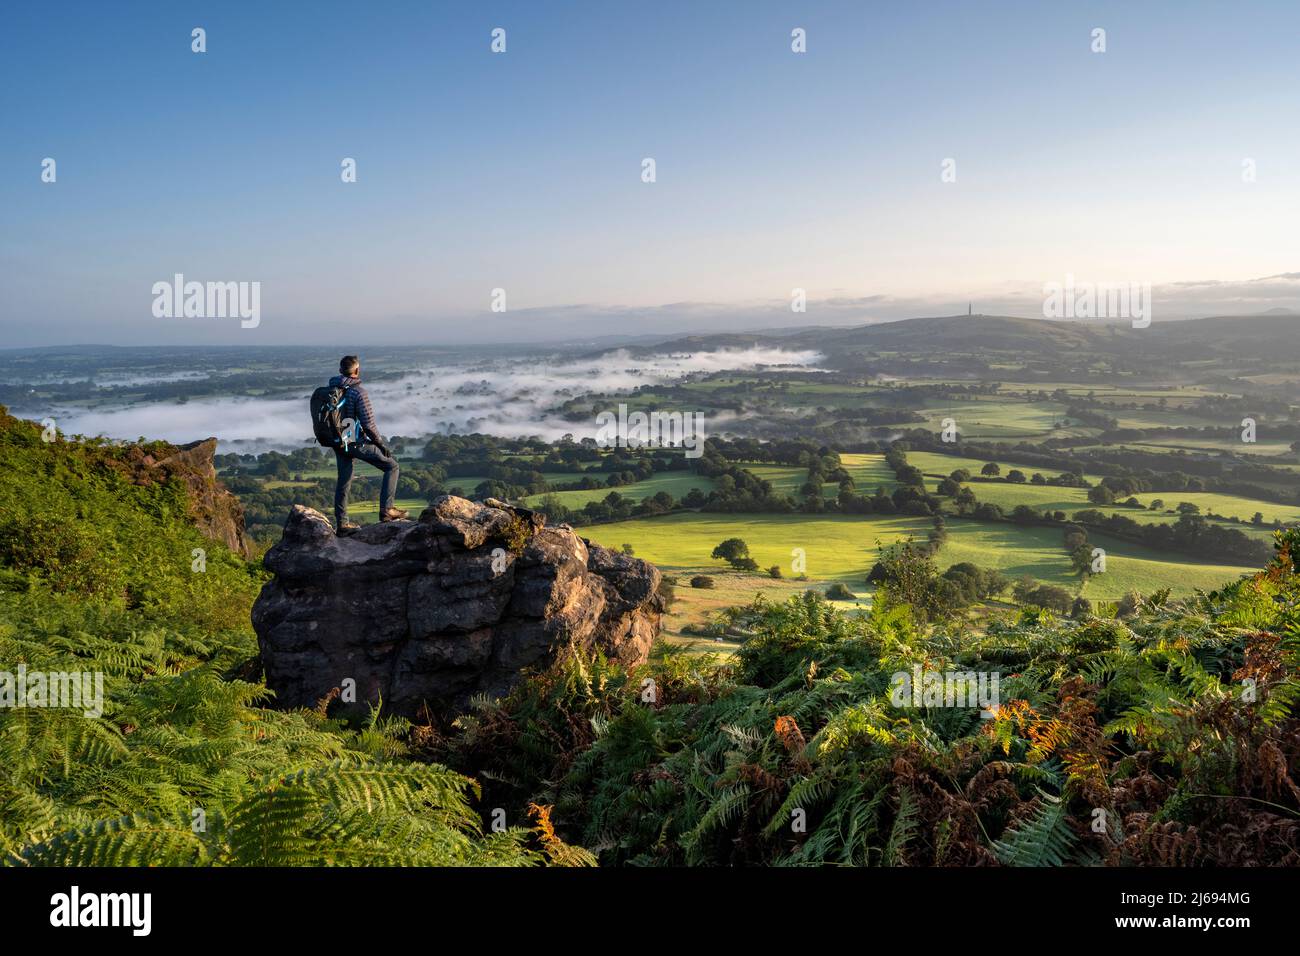 Un escursionista si trovava su una roccia a Cloudside guardando attraverso le pianure di Cheshire, Congleton, Cheshire, Inghilterra, Regno Unito, Europa Foto Stock